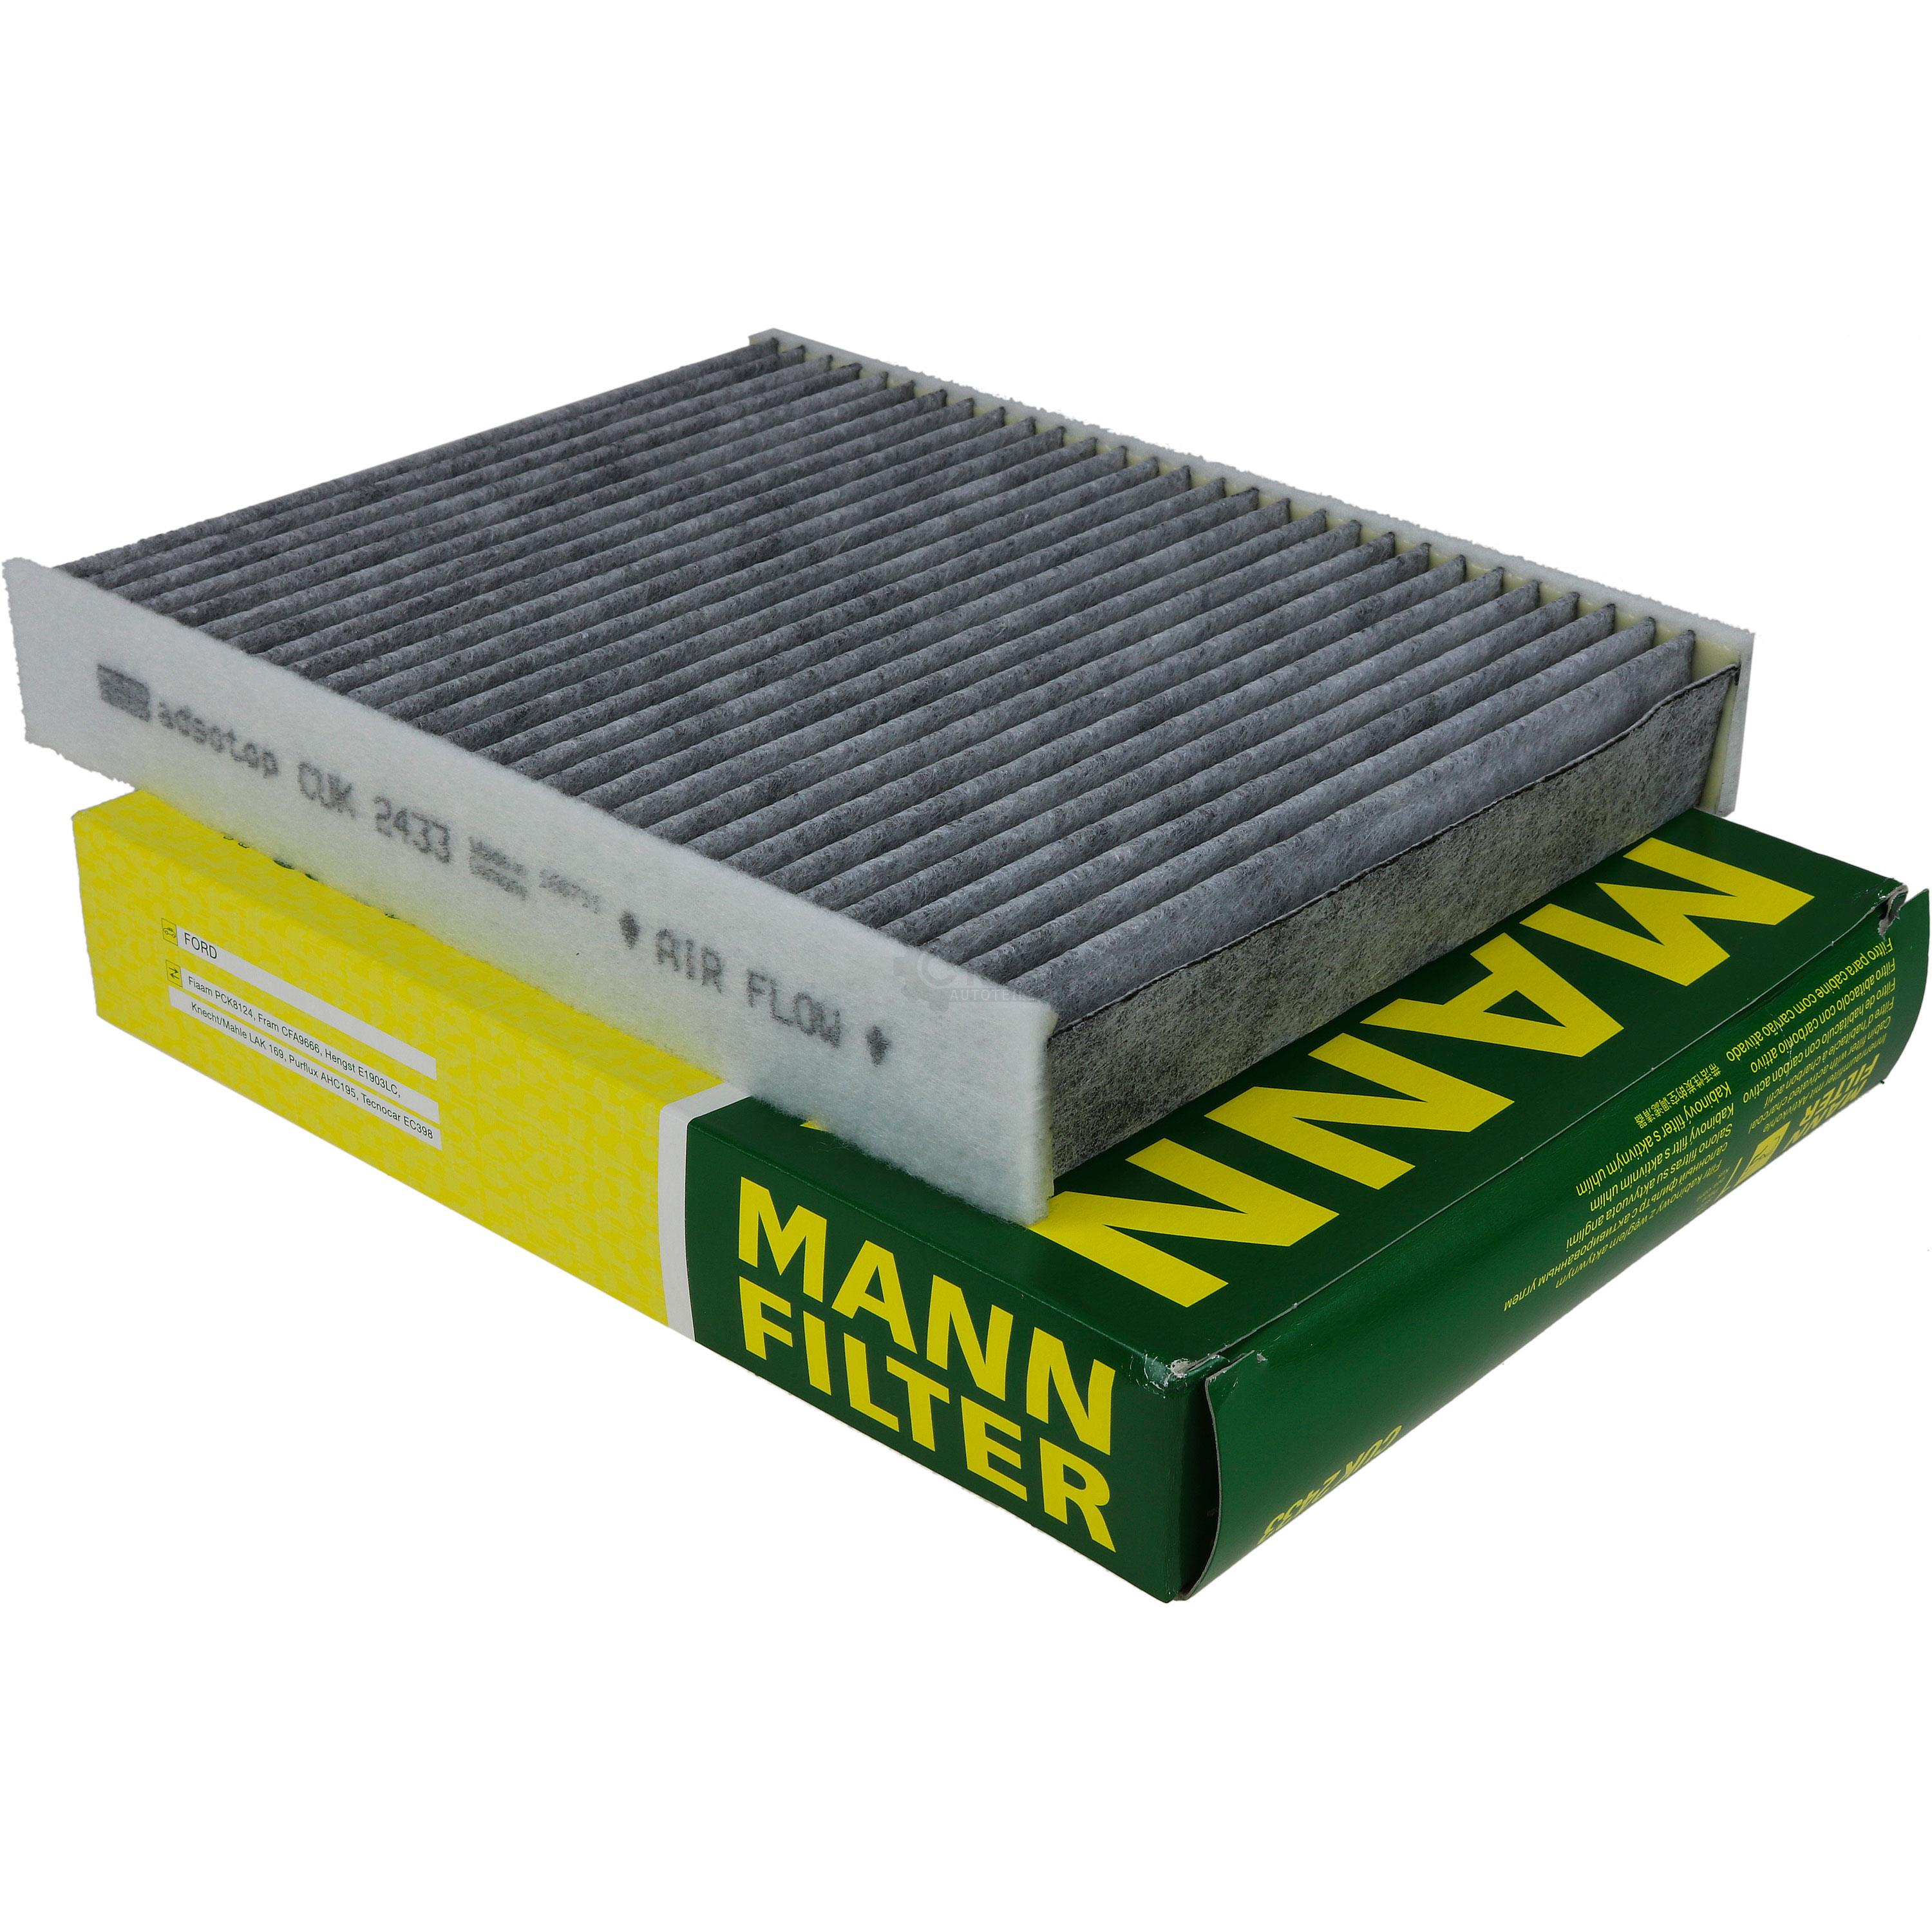 MANN-FILTER Innenraumfilter Pollenfilter Aktivkohle CUK 2433